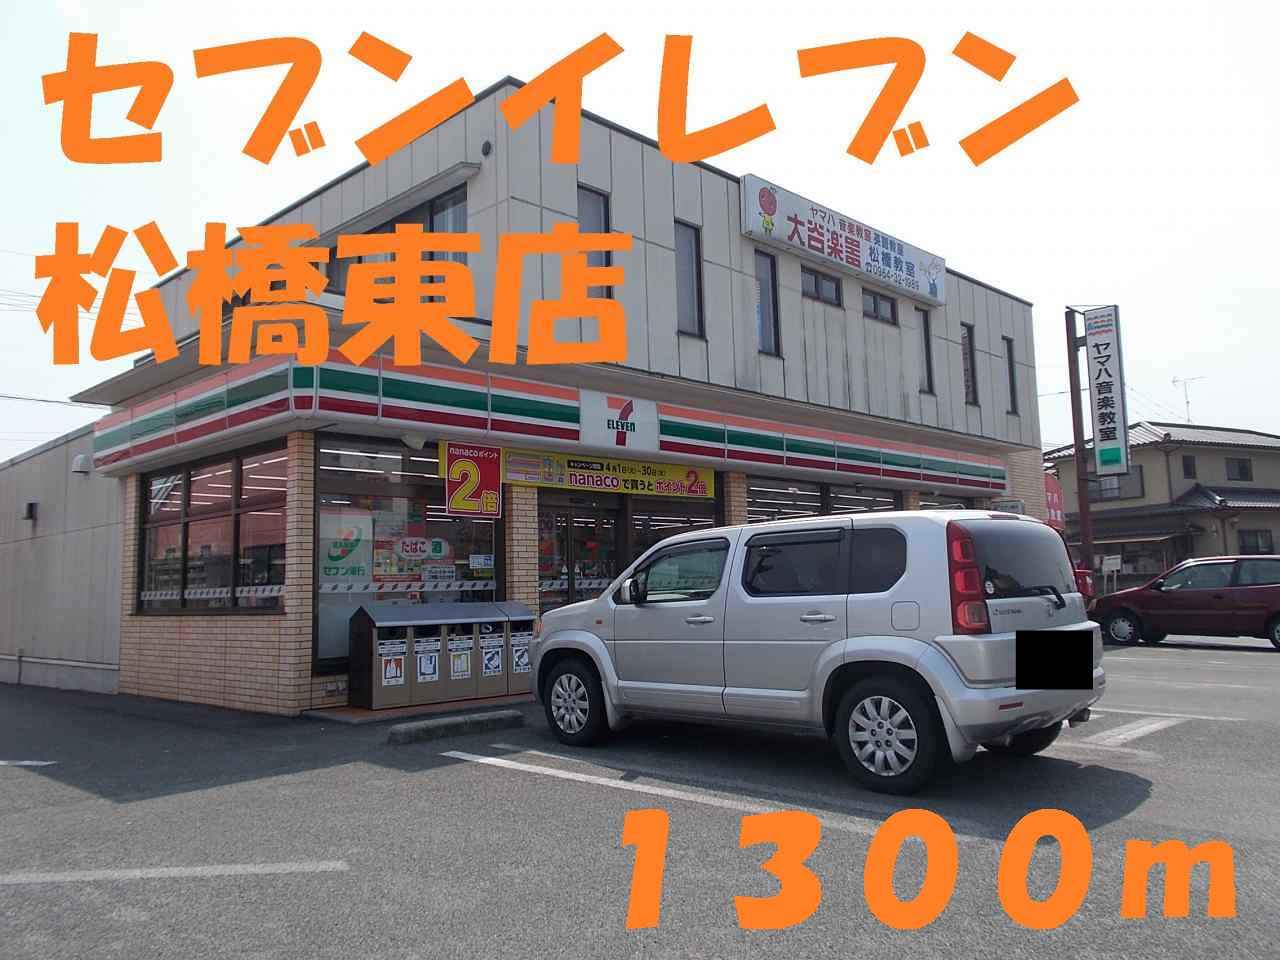 Convenience store. 1300m until the Seven-Eleven Matsuhashi Higashiten (convenience store)